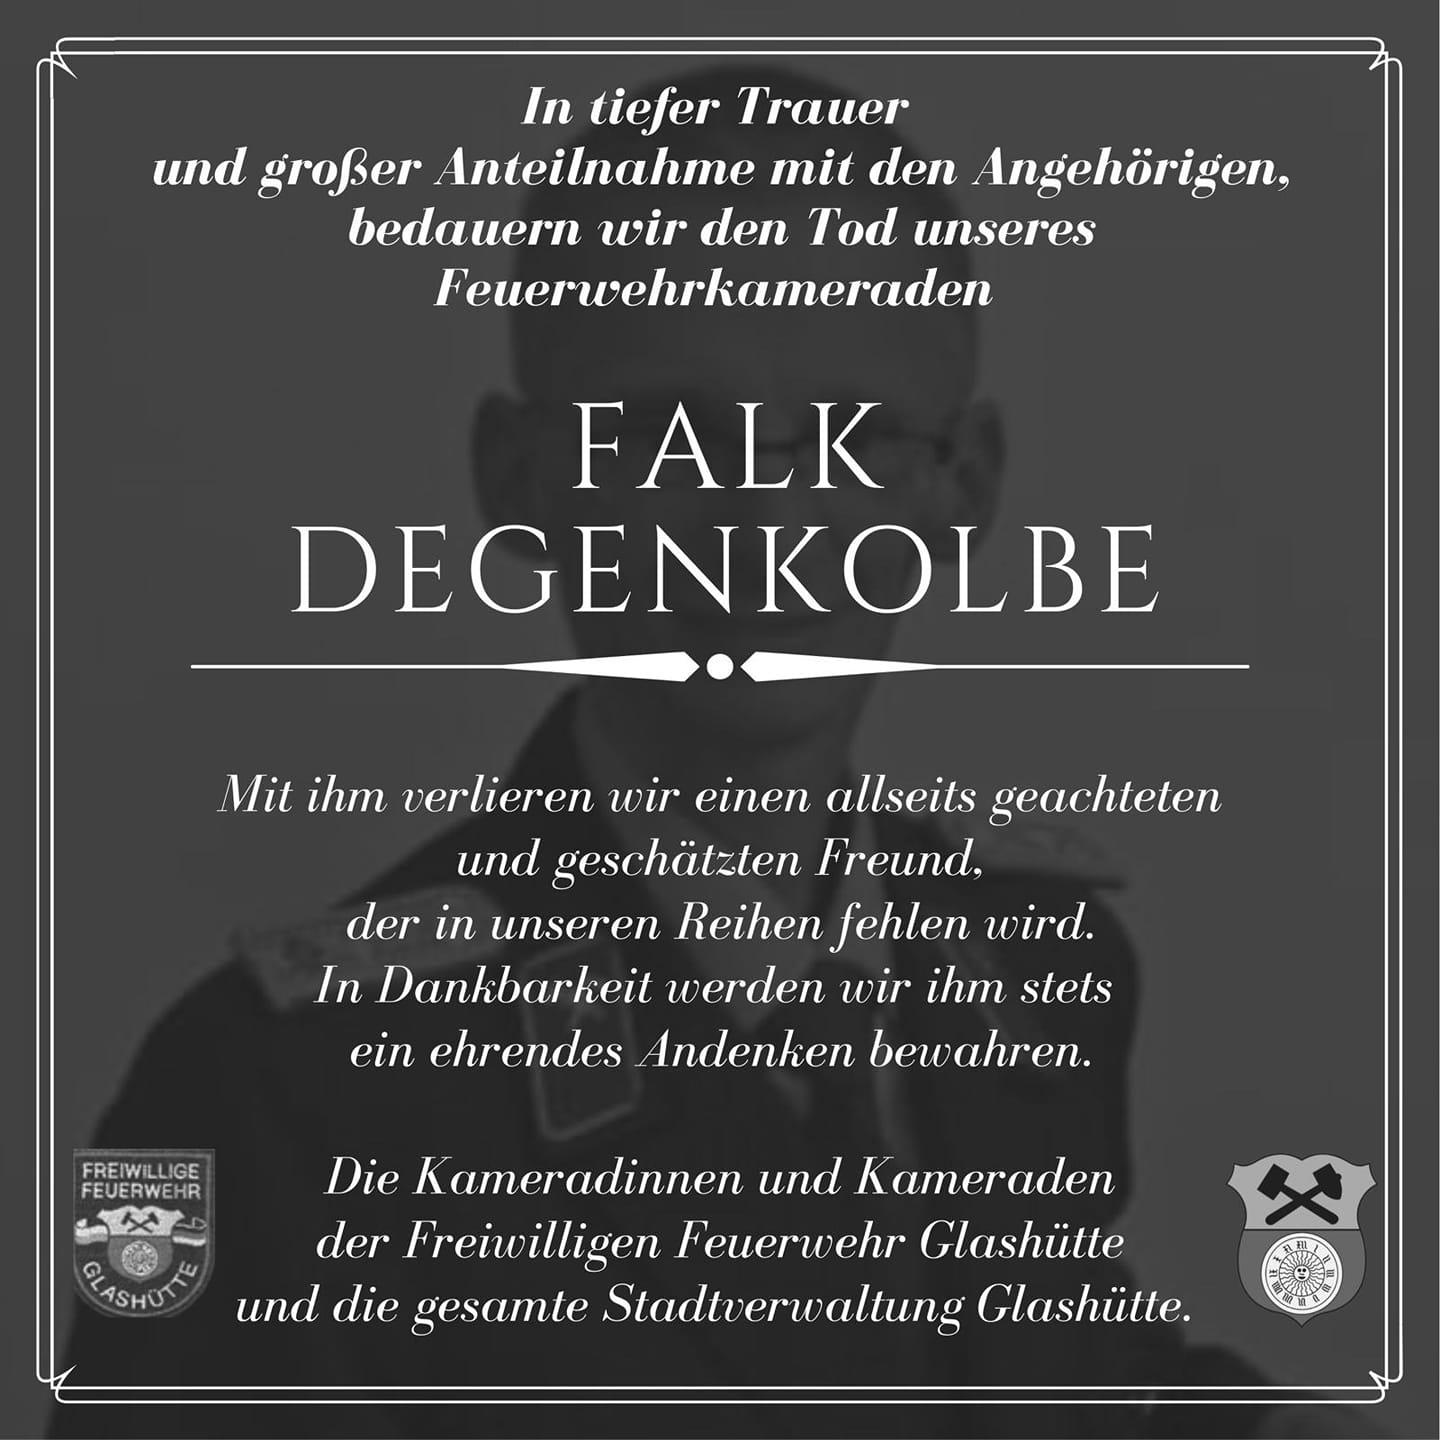 Falk Degenkolbe